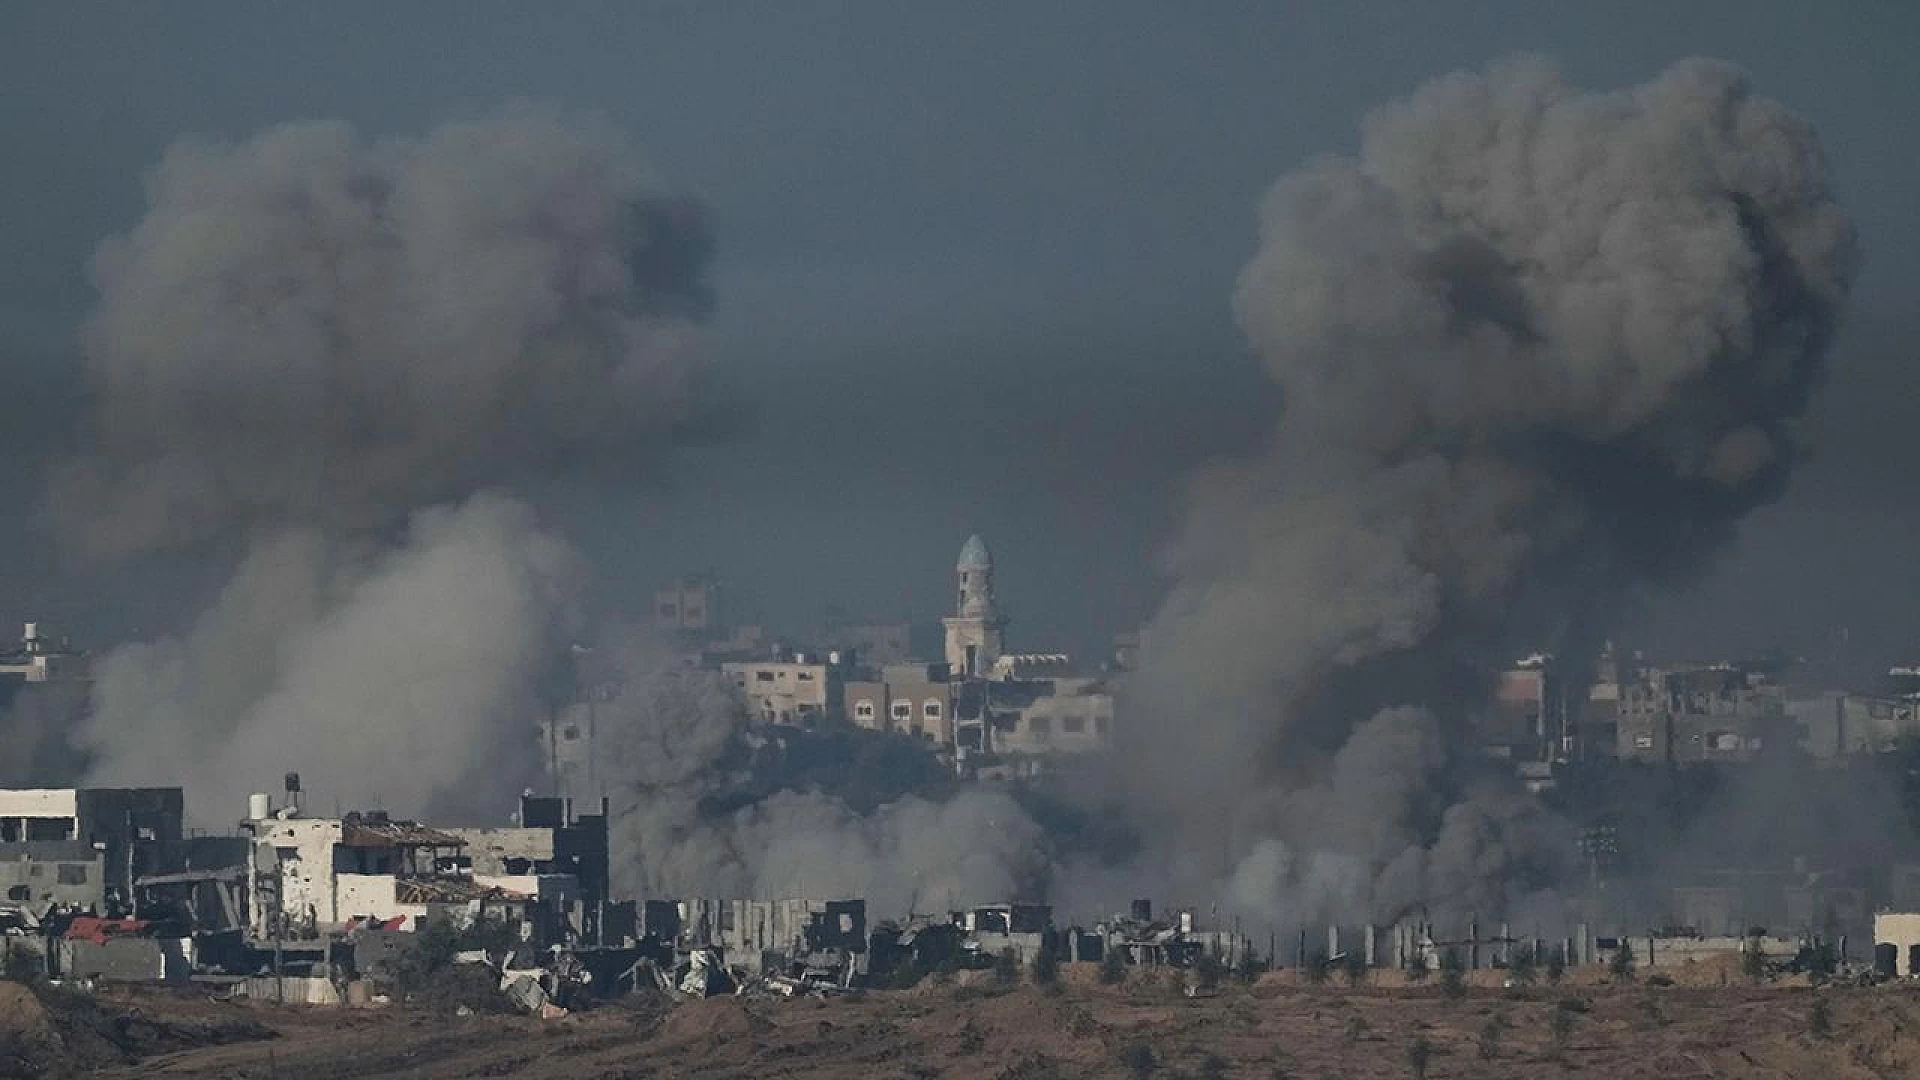 İşte Filistin'e saldırılar sürsün diyen İsrail yalakası 10 ülke